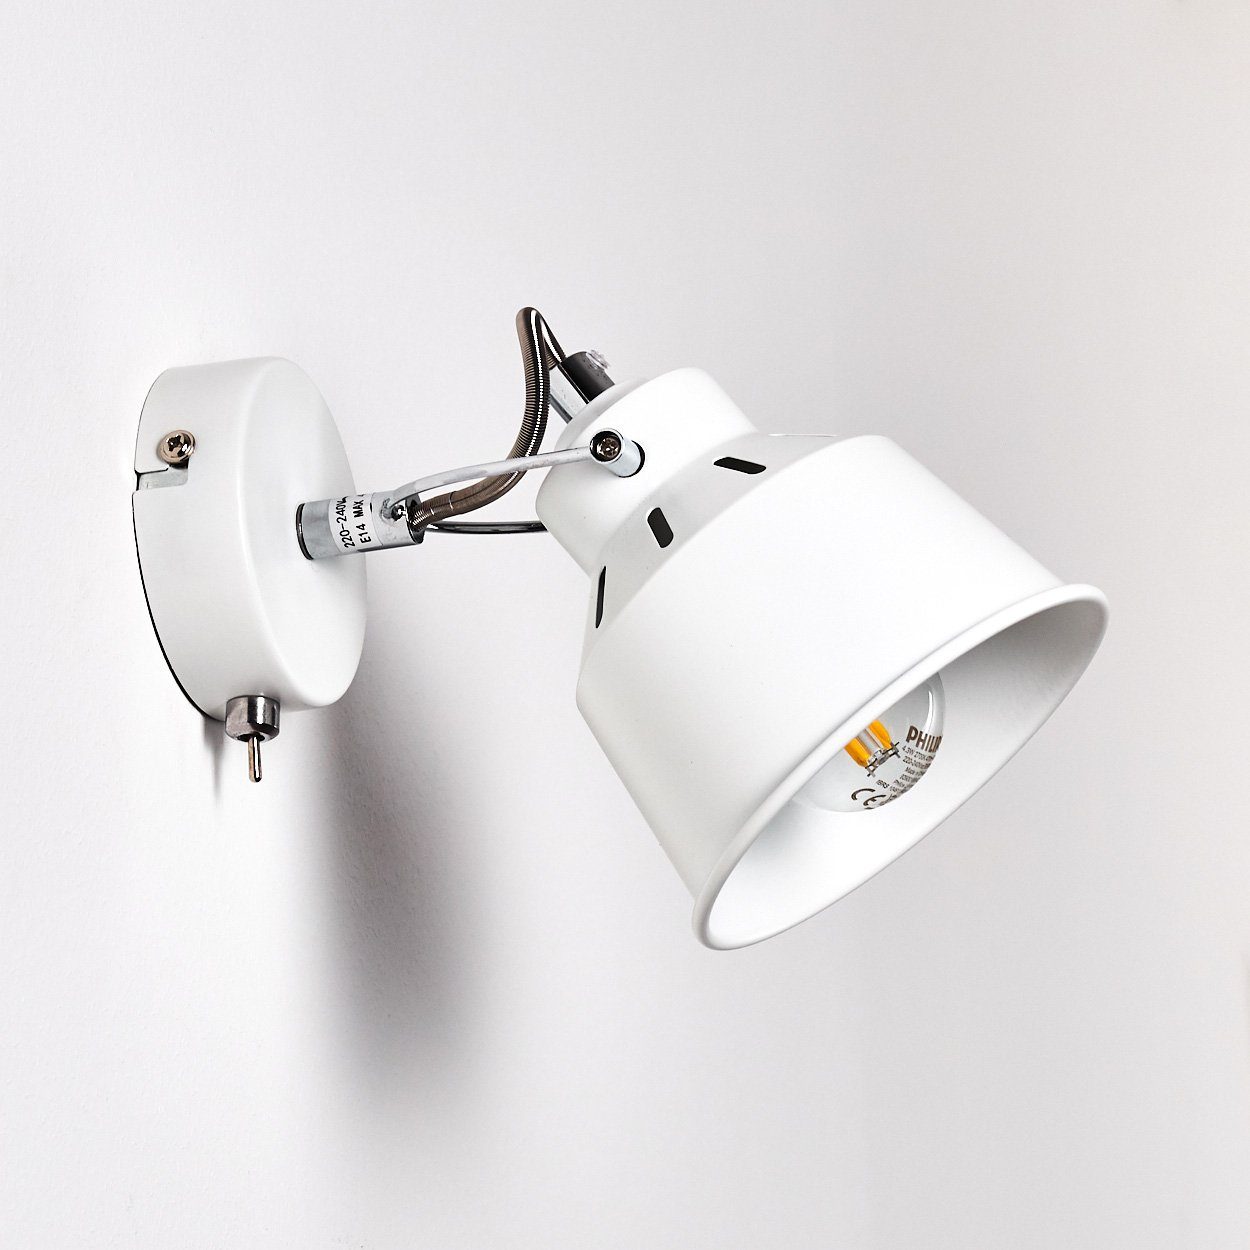 Design hofstein Retro/Vintage im Weiß, »Rimini« ohne Metall Wandlampe Wandleuchte verstellbare Wandspot 1xE14, in Leuchtmittel, aus